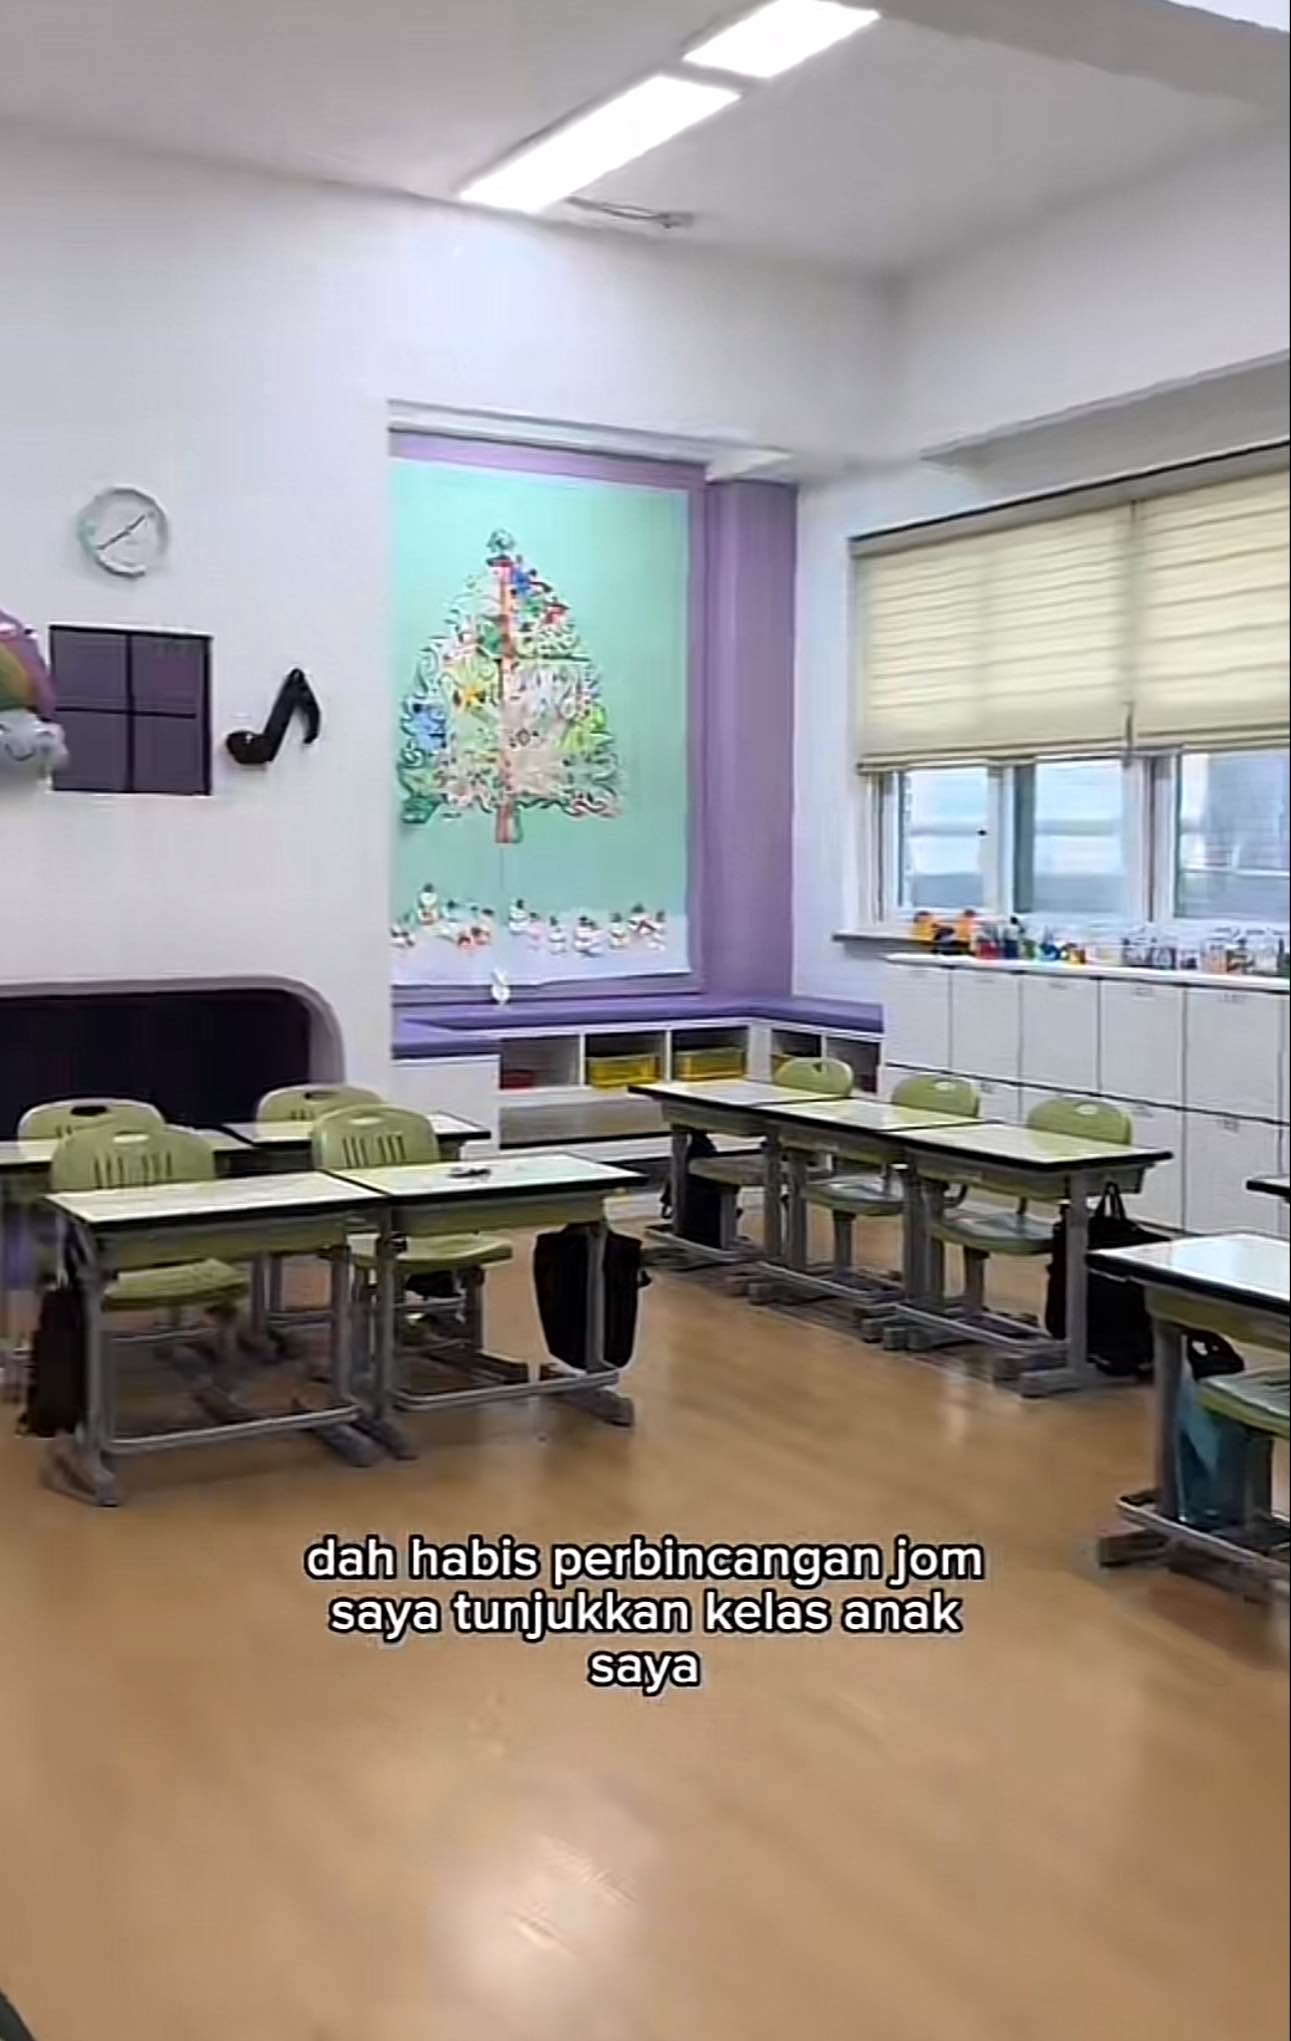 A classroom in seoul, south korea